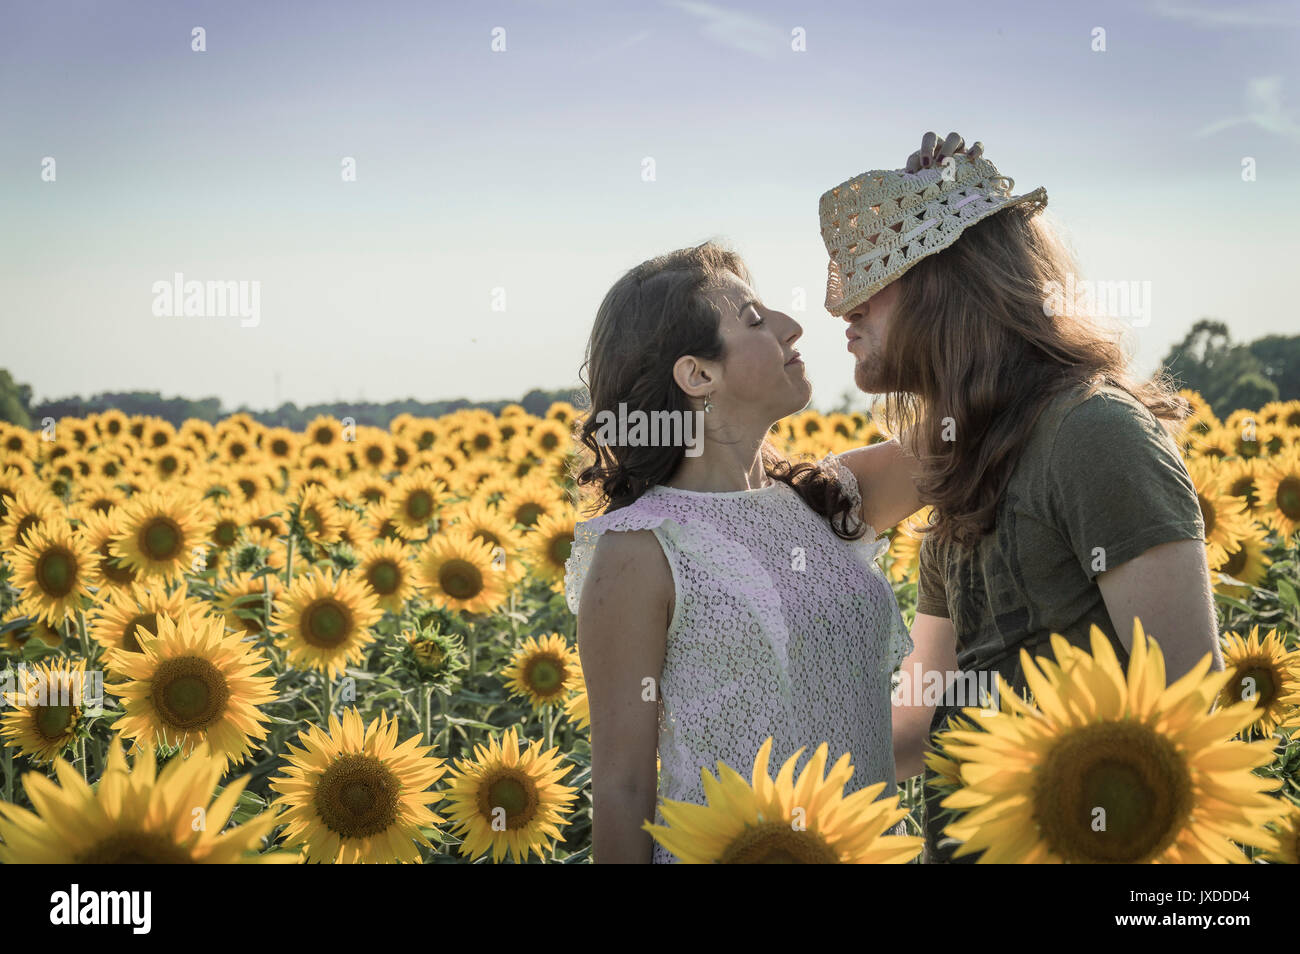 Spontane attraktive junge Brautpaar teilen einen guten Witz lacht schallend und umarmen einander im Freien in einem Sonnenblumenfeld Stockfoto